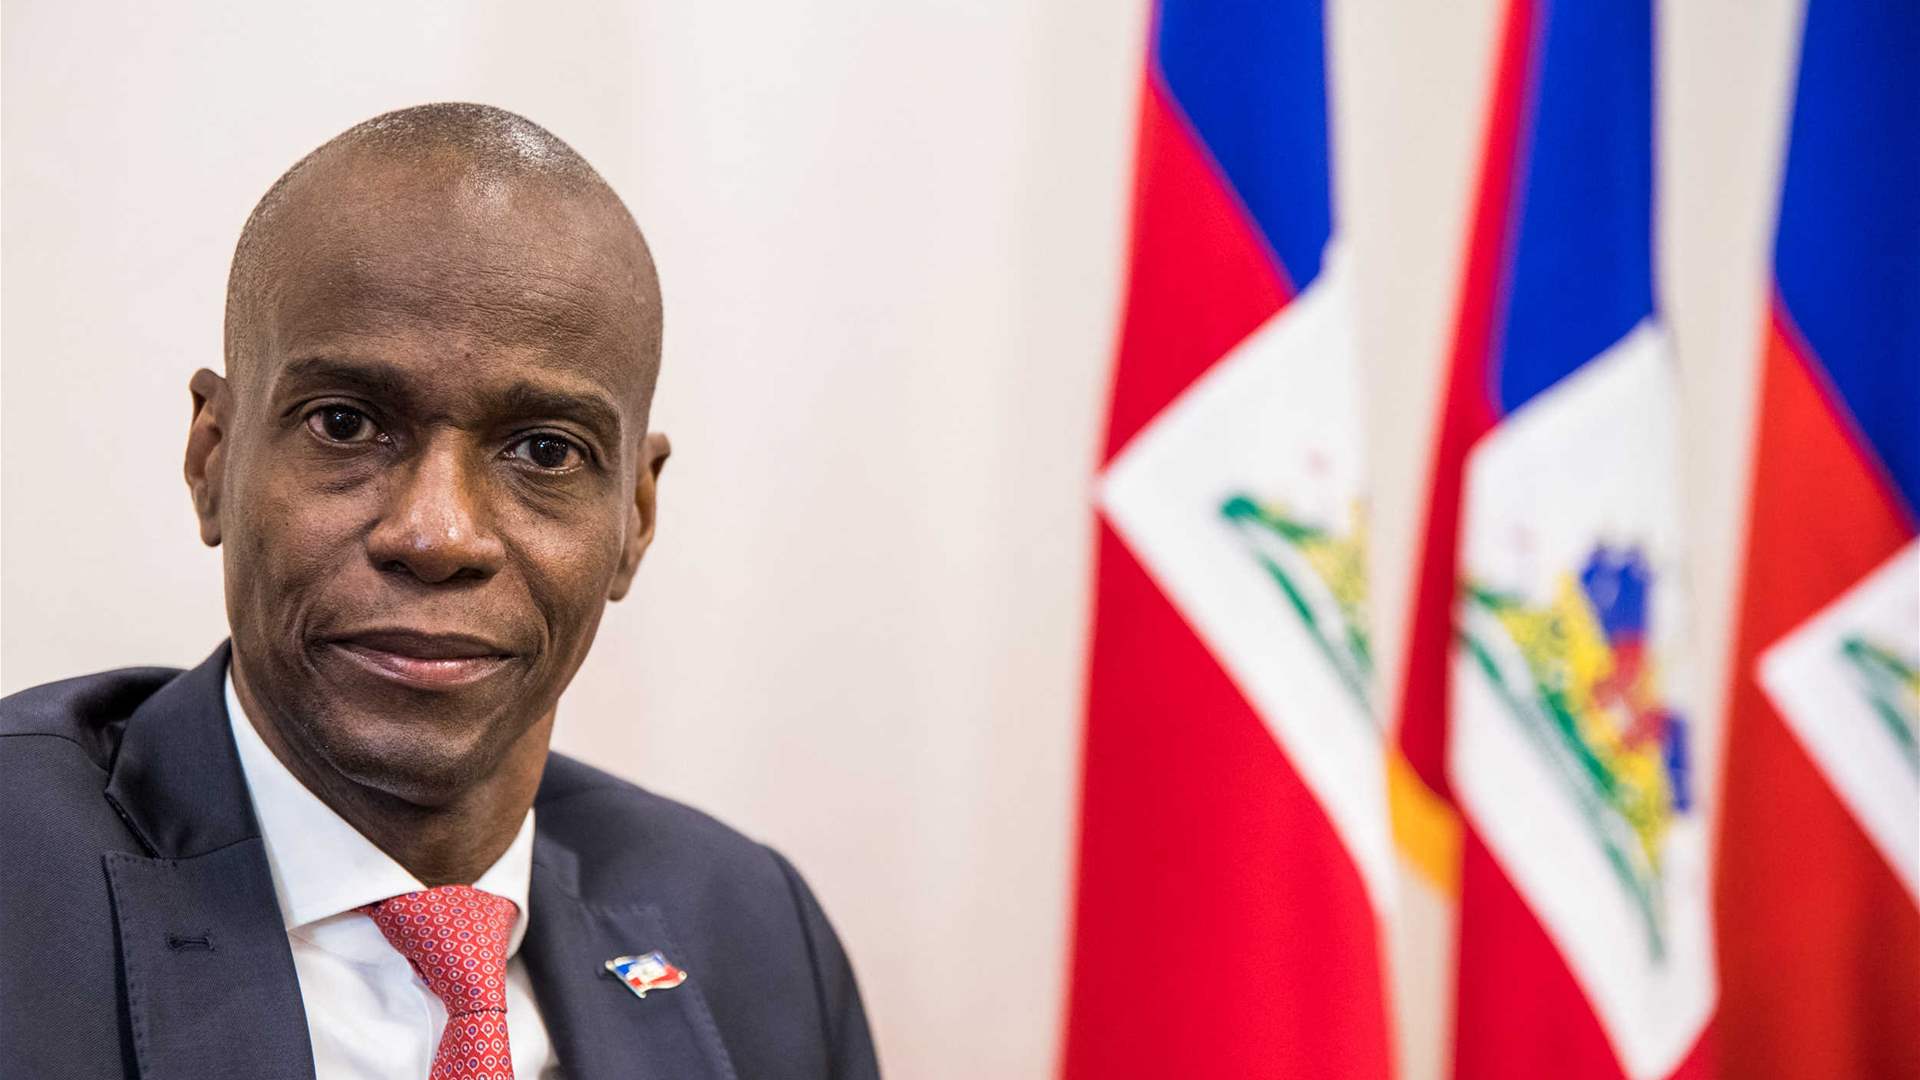 رجل يقر بتأدية دور في اغتيال رئيس هايتي